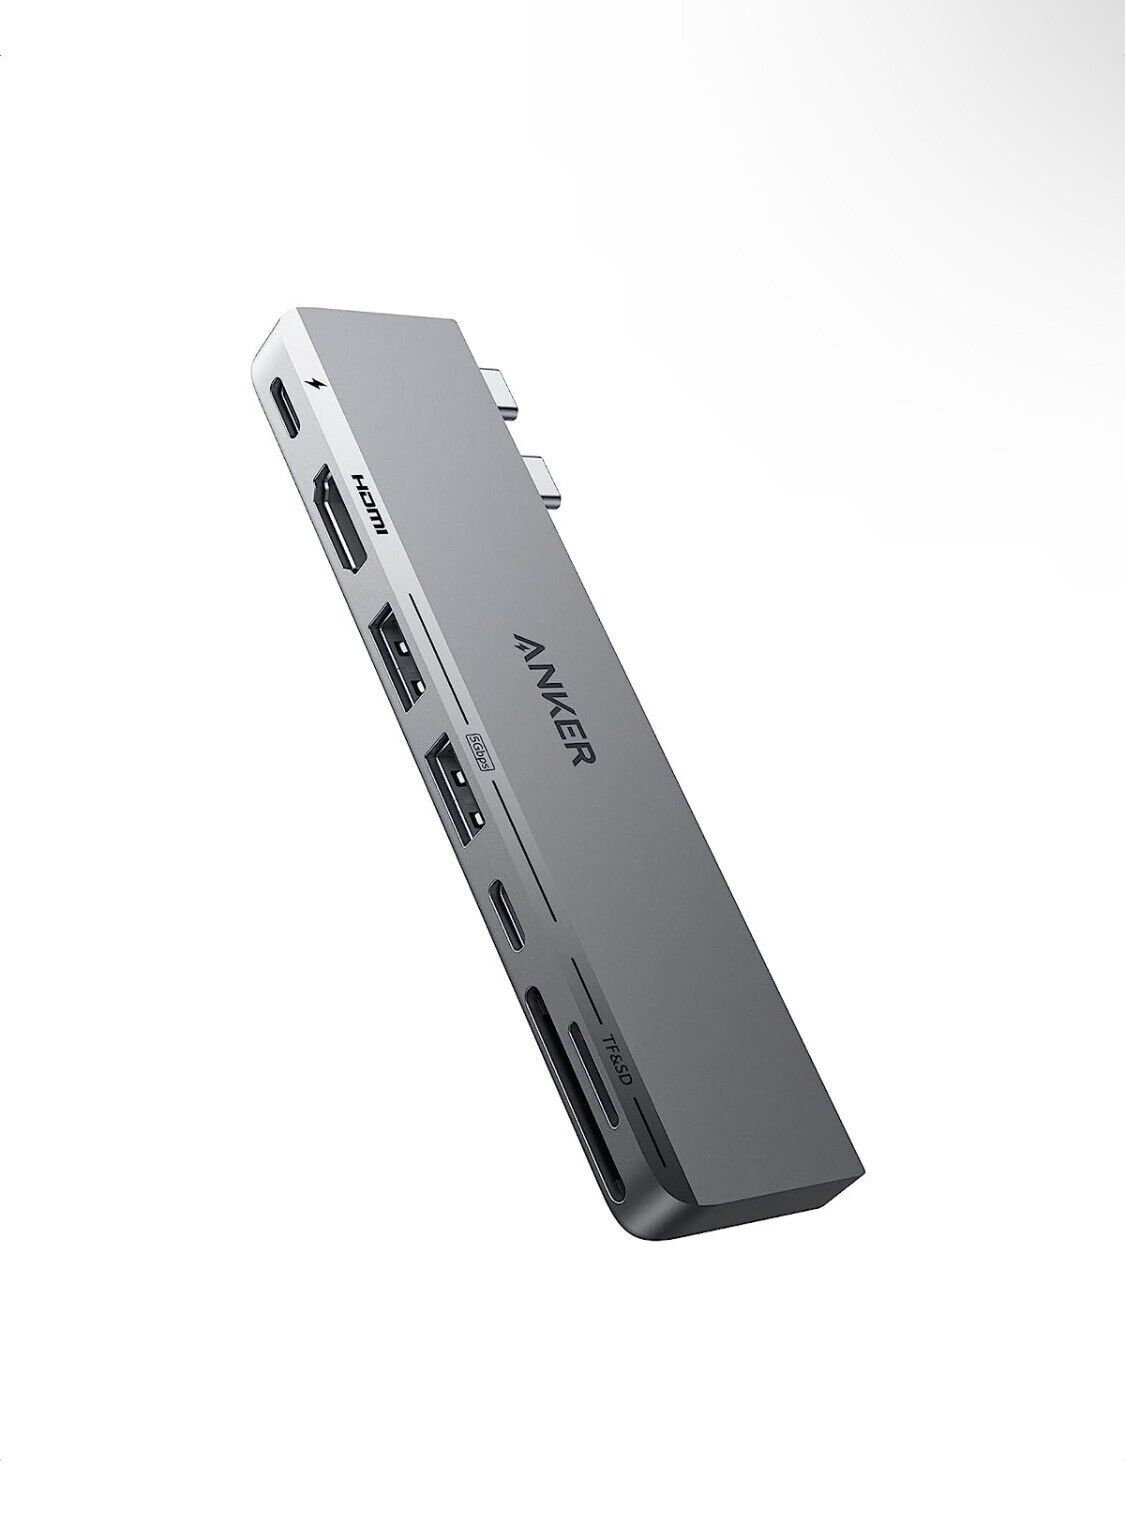 Anker USB C Hub for MacBook, Anker 547 USB-C 